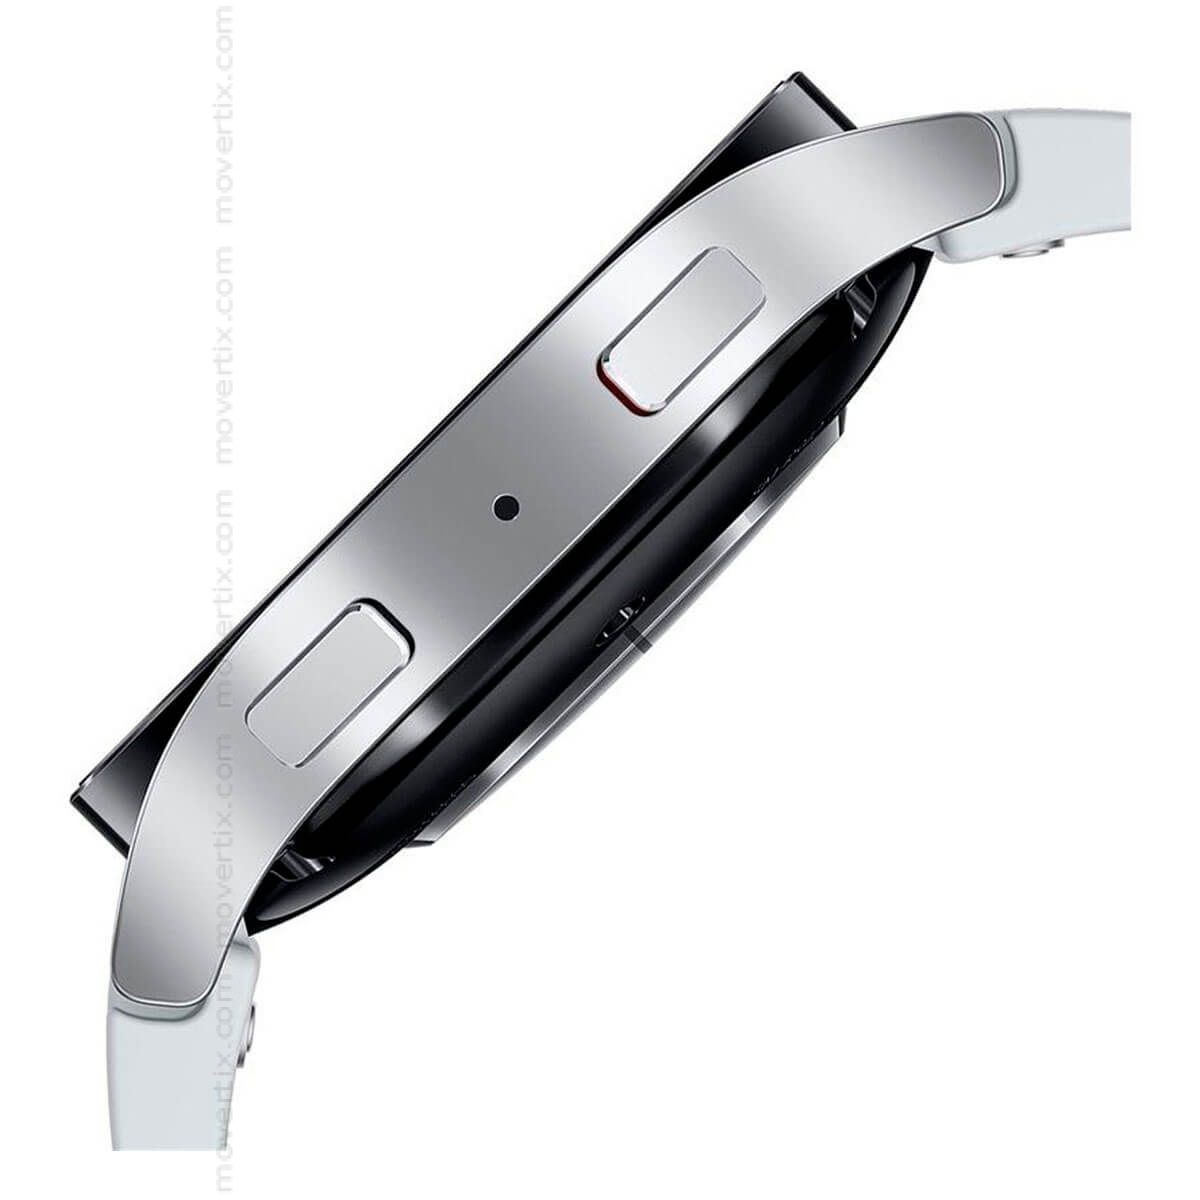 Get Galaxy Watch6 (Bluetooth) 44mm - Silver